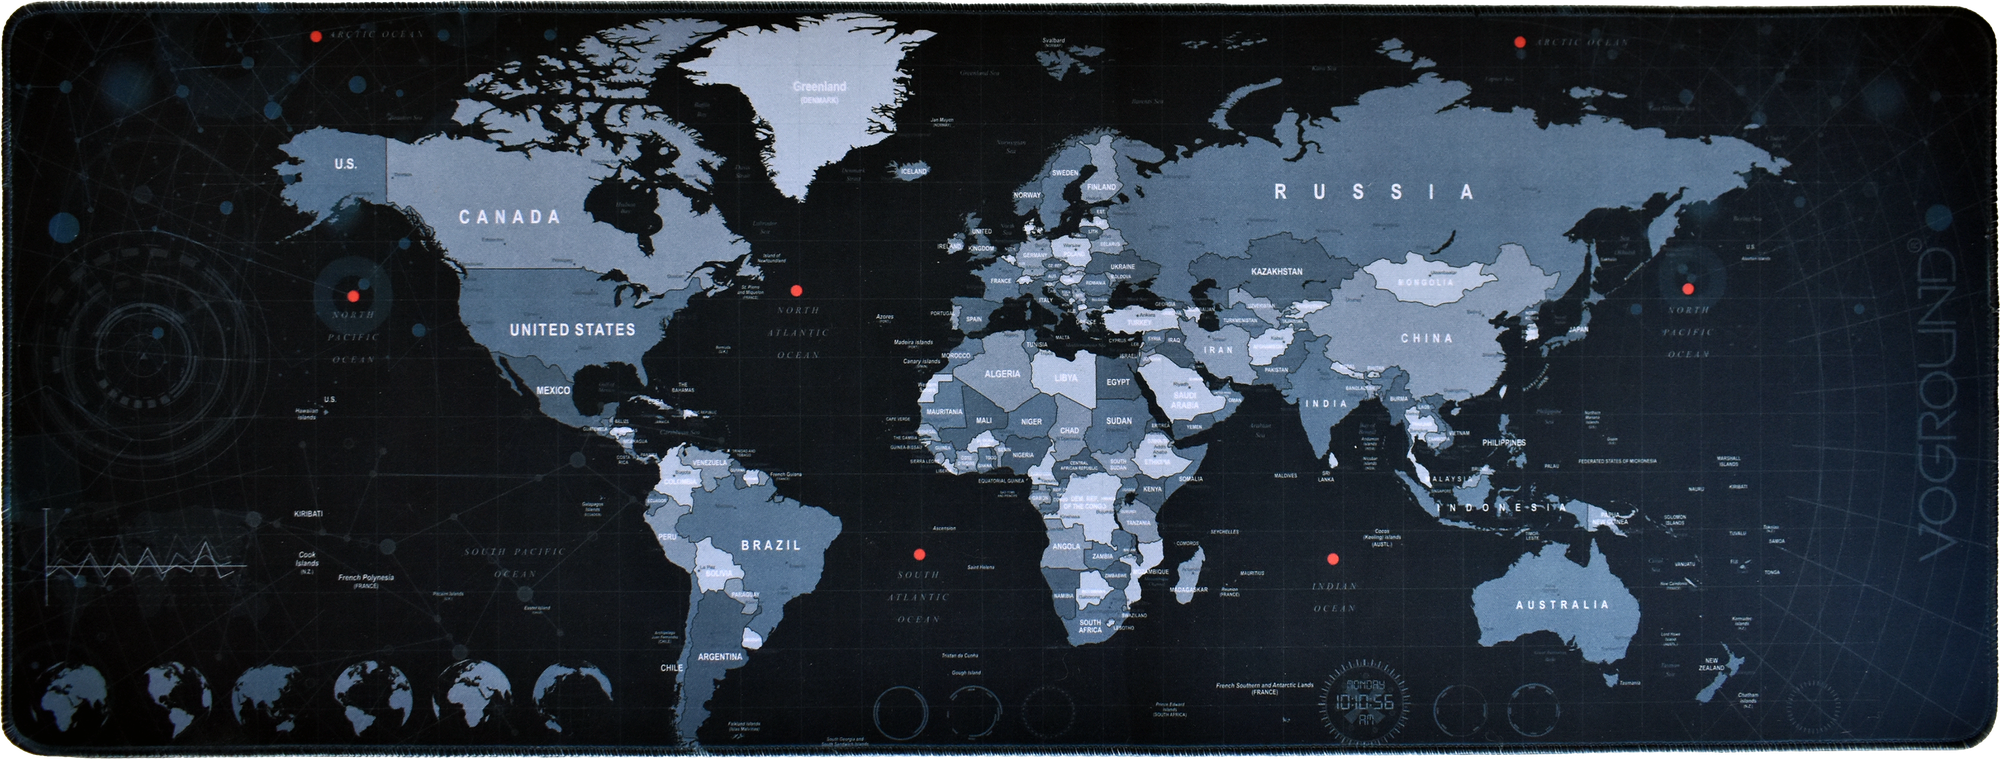 Коврик для мышки DKiSerg большой 80см*30см карта мира